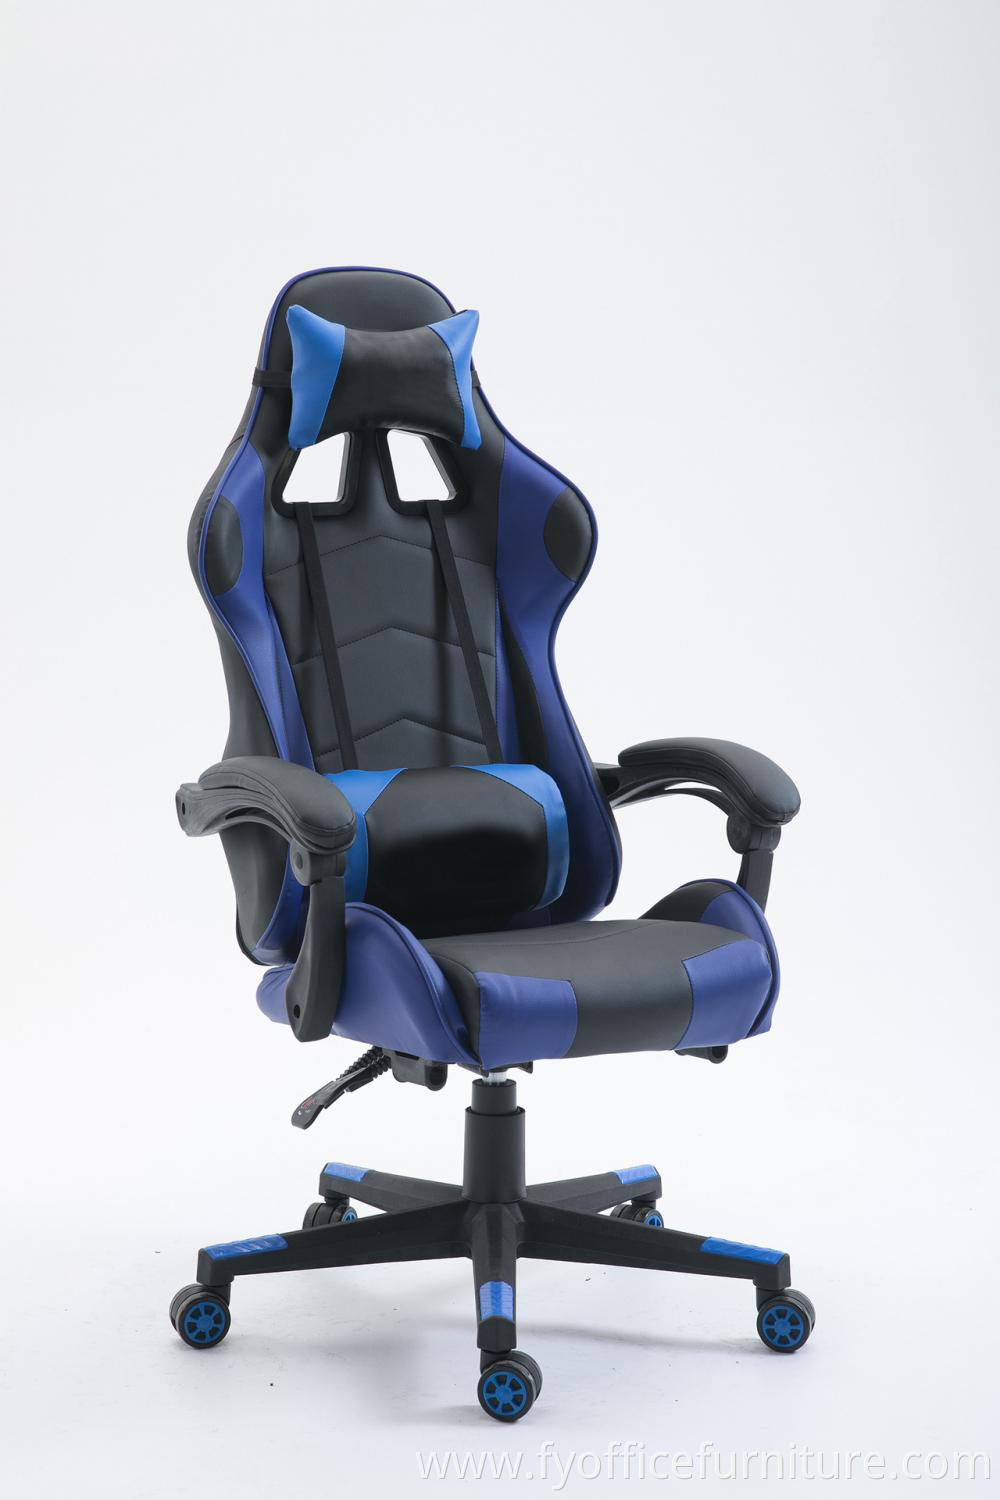 Ergonomic gaming chair